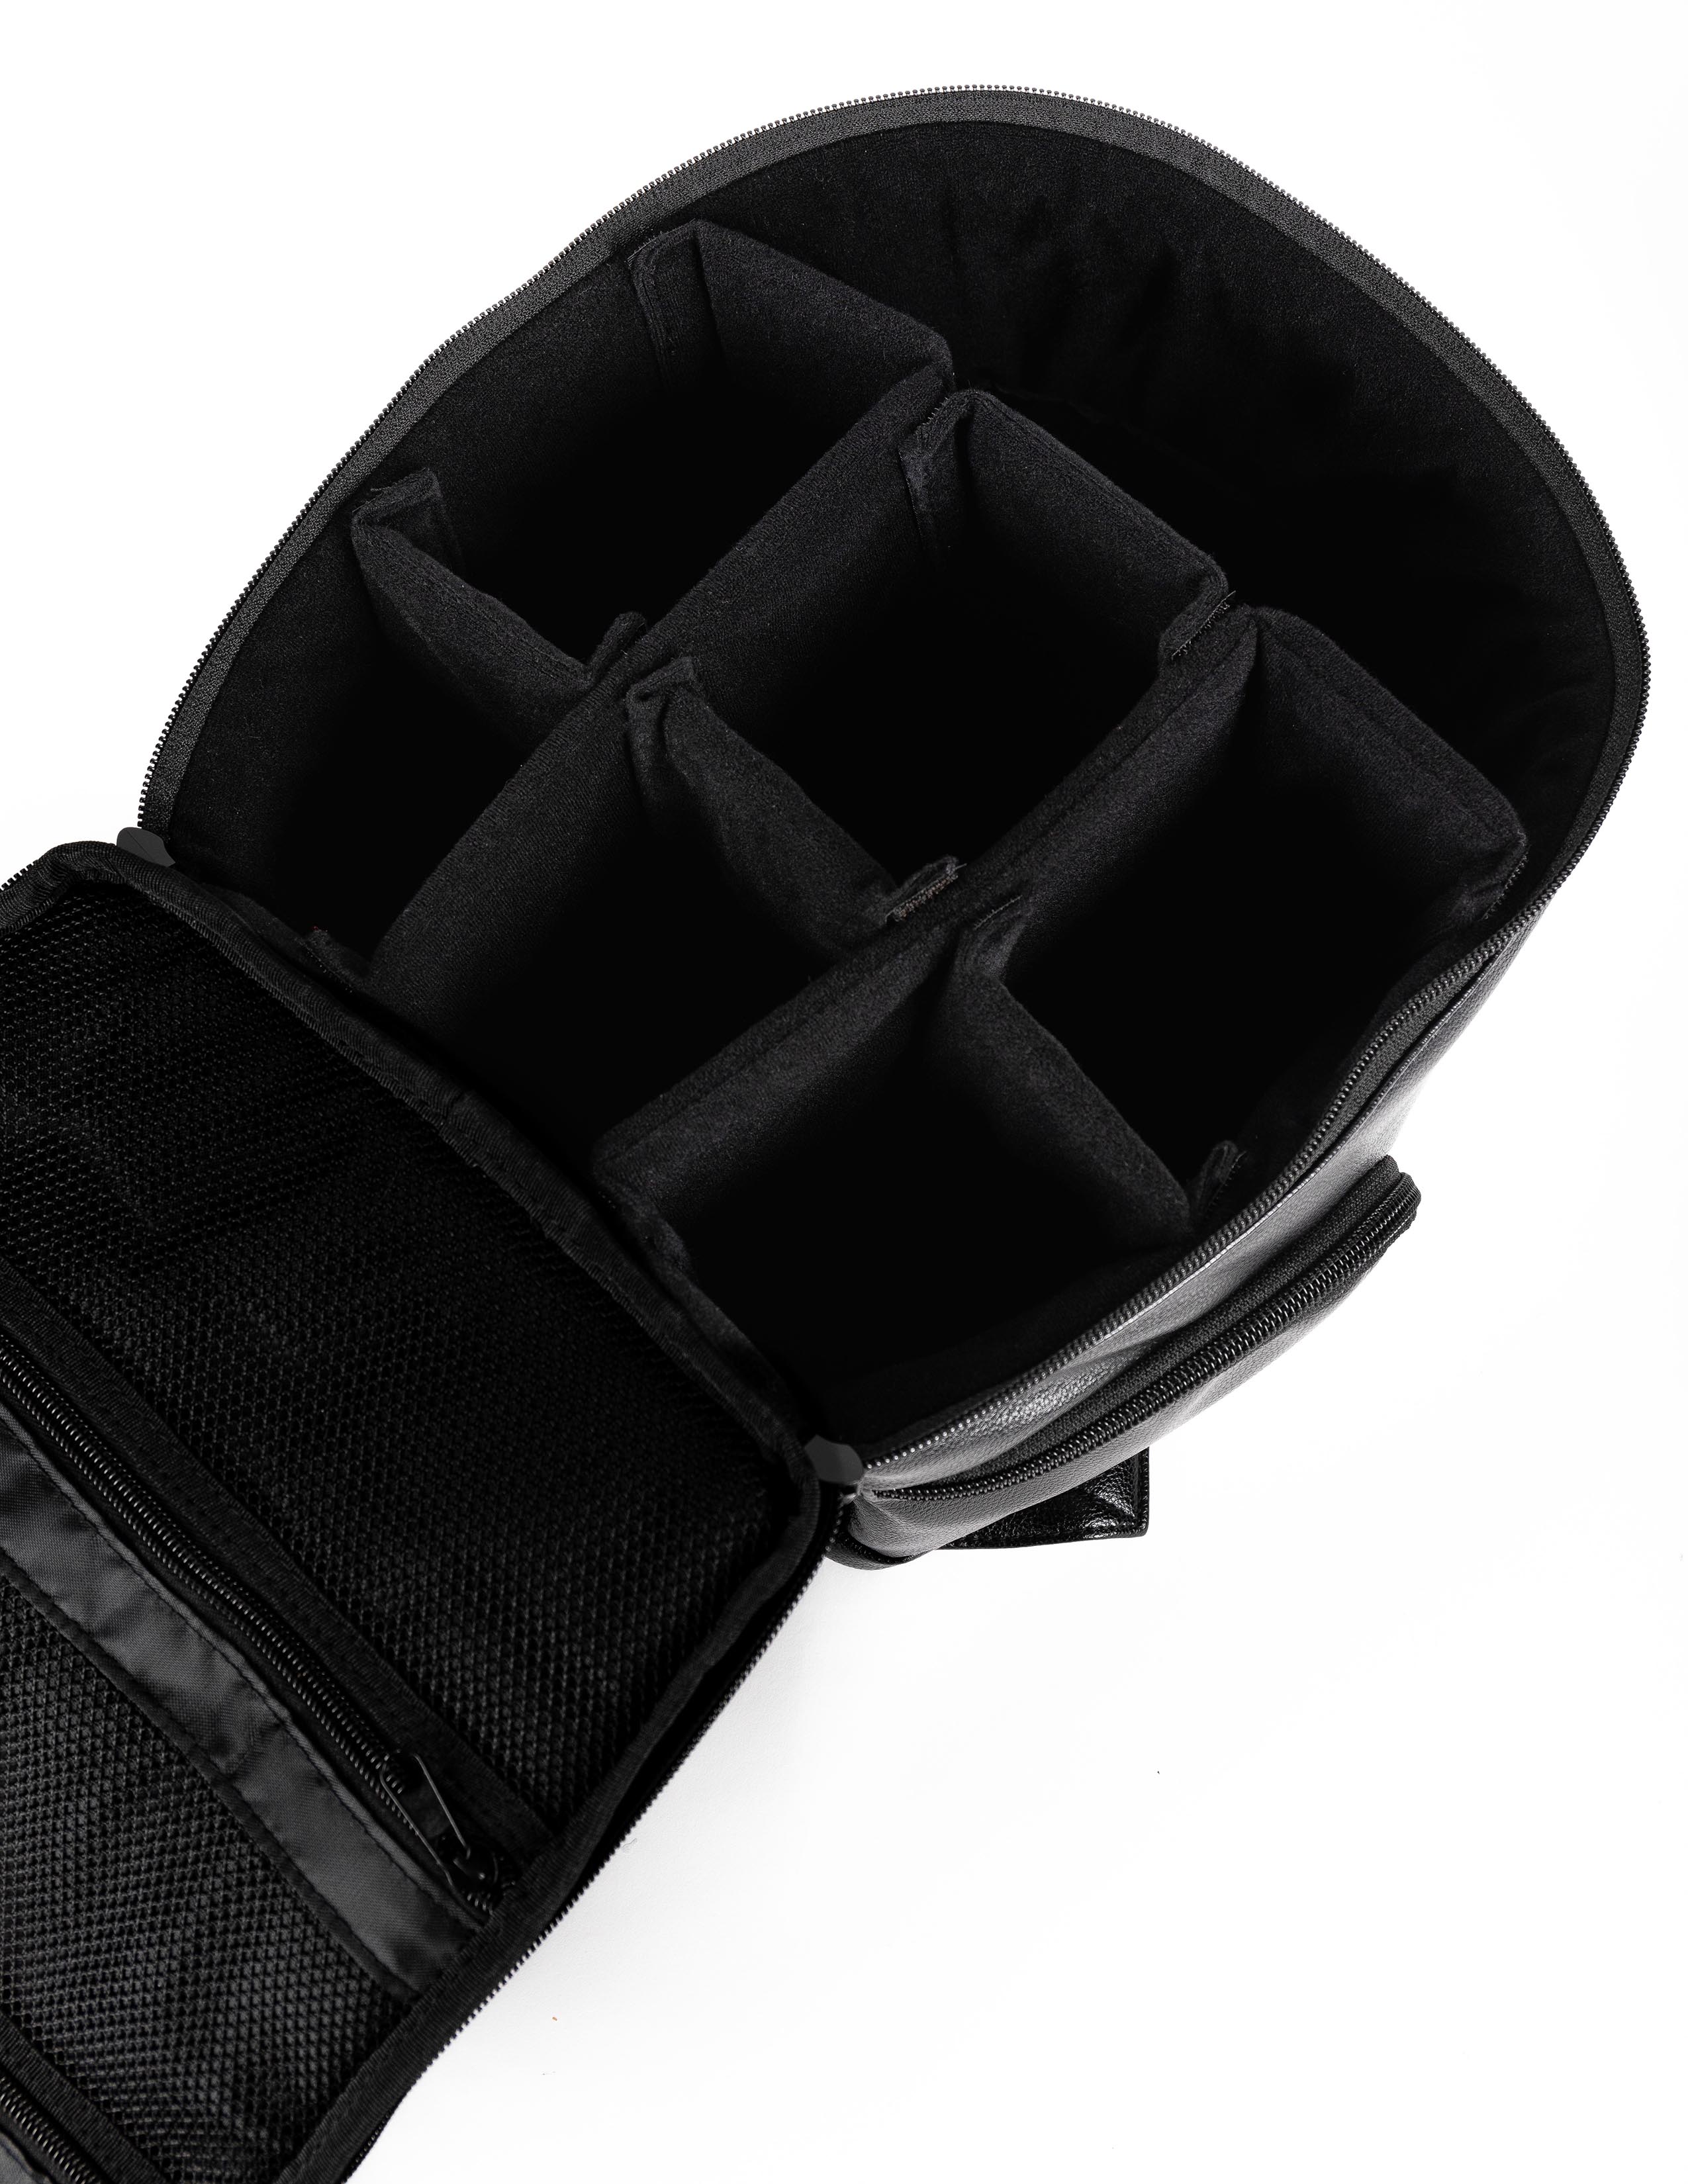 stylish vegan leather camera backpack